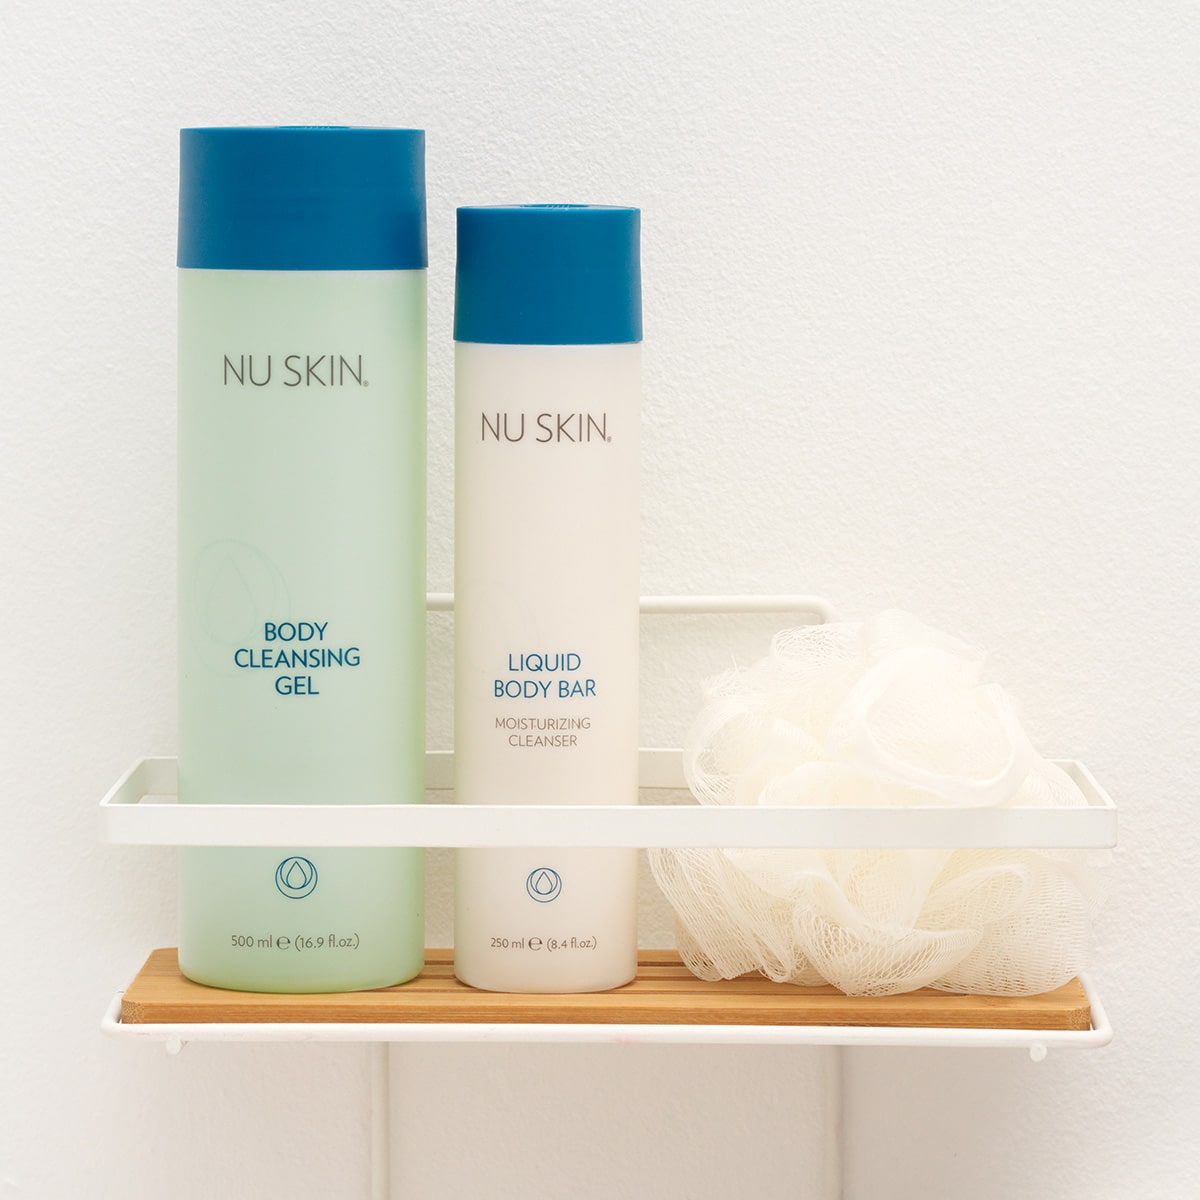 Nu Skin Basic Produkte (Body Cleansing Gel, 500ml und Liquid Body Bar, 250ml) stehen geschlossen auf einer kleinen Ablage in sanitärer Umgebung. Daneben liegt ein weißer Schwamm.